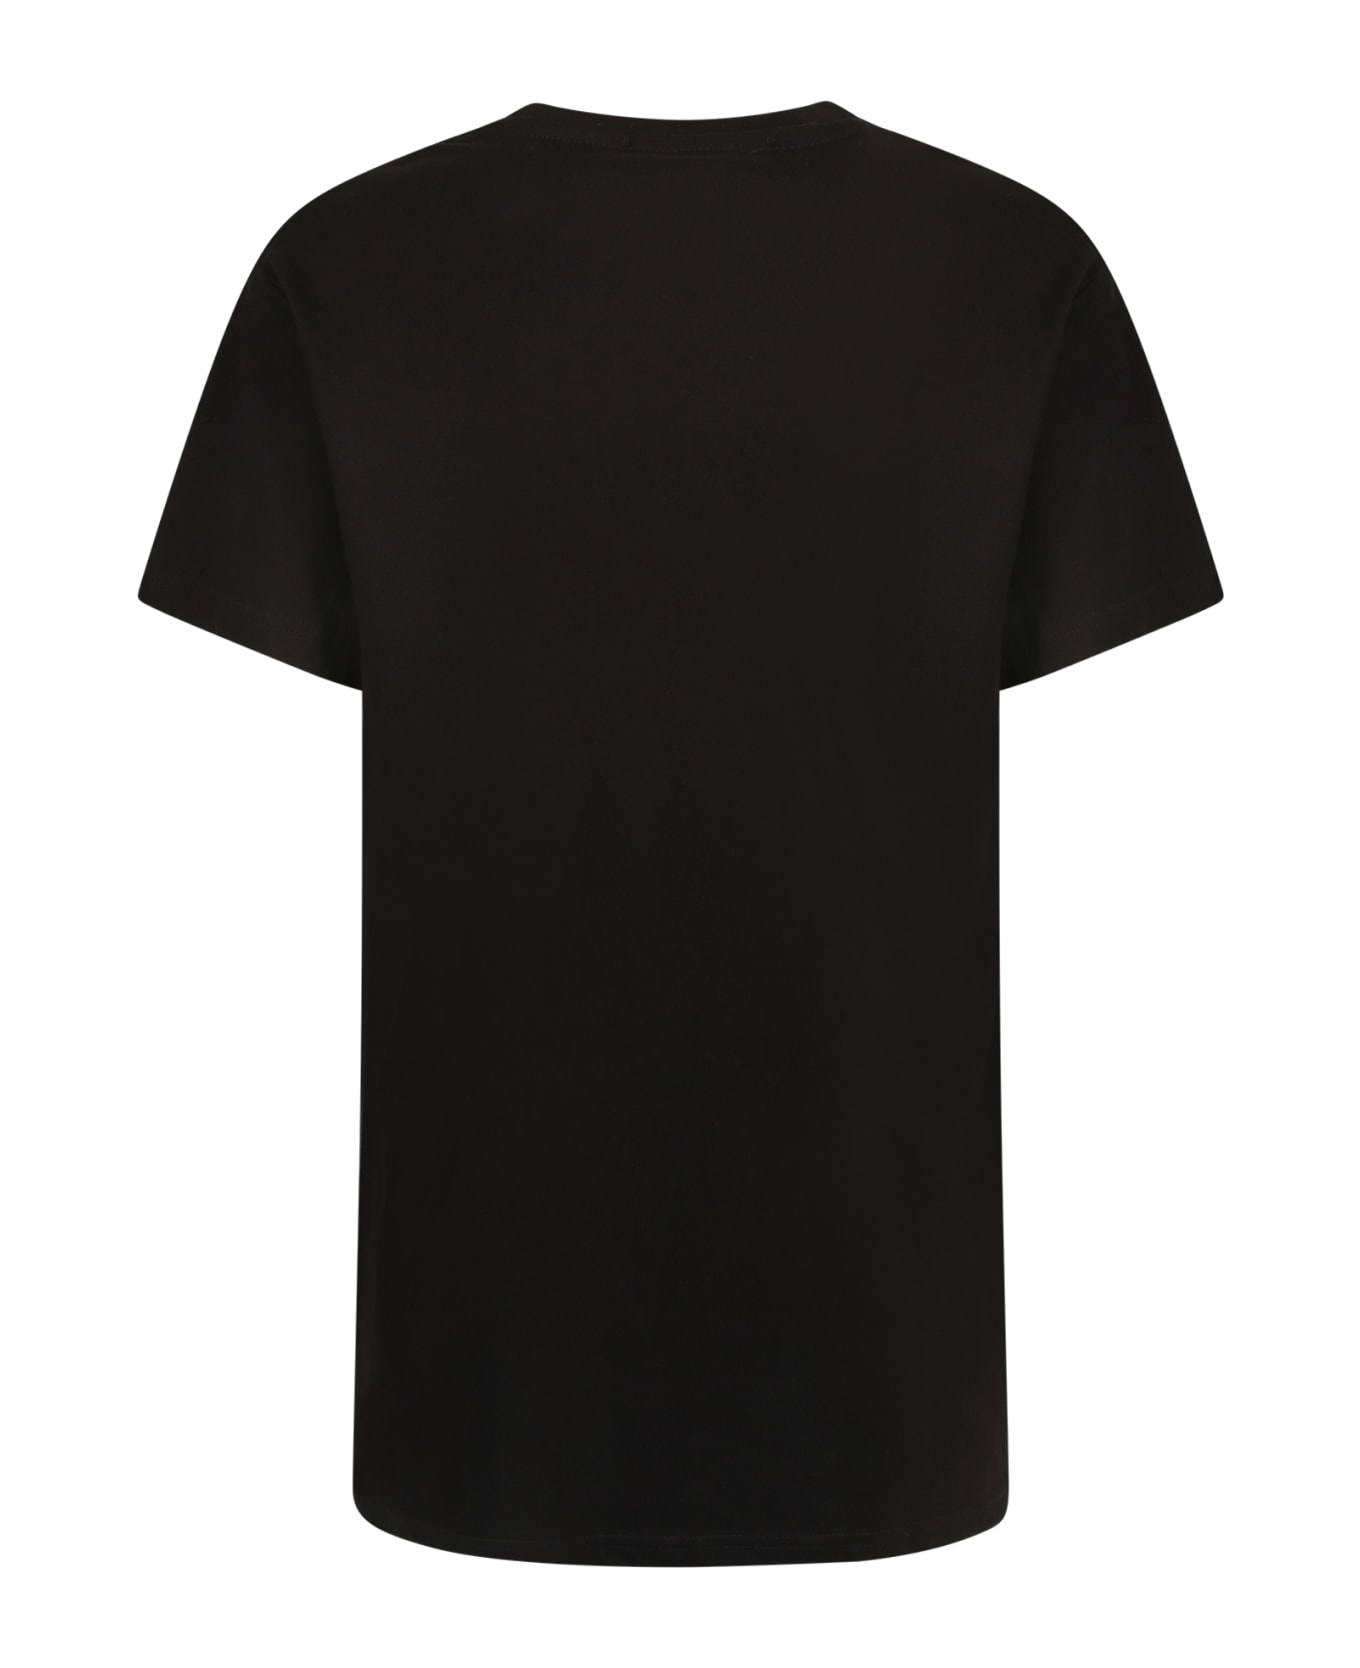 Alessandro Enriquez Cotton T-shirt - Black